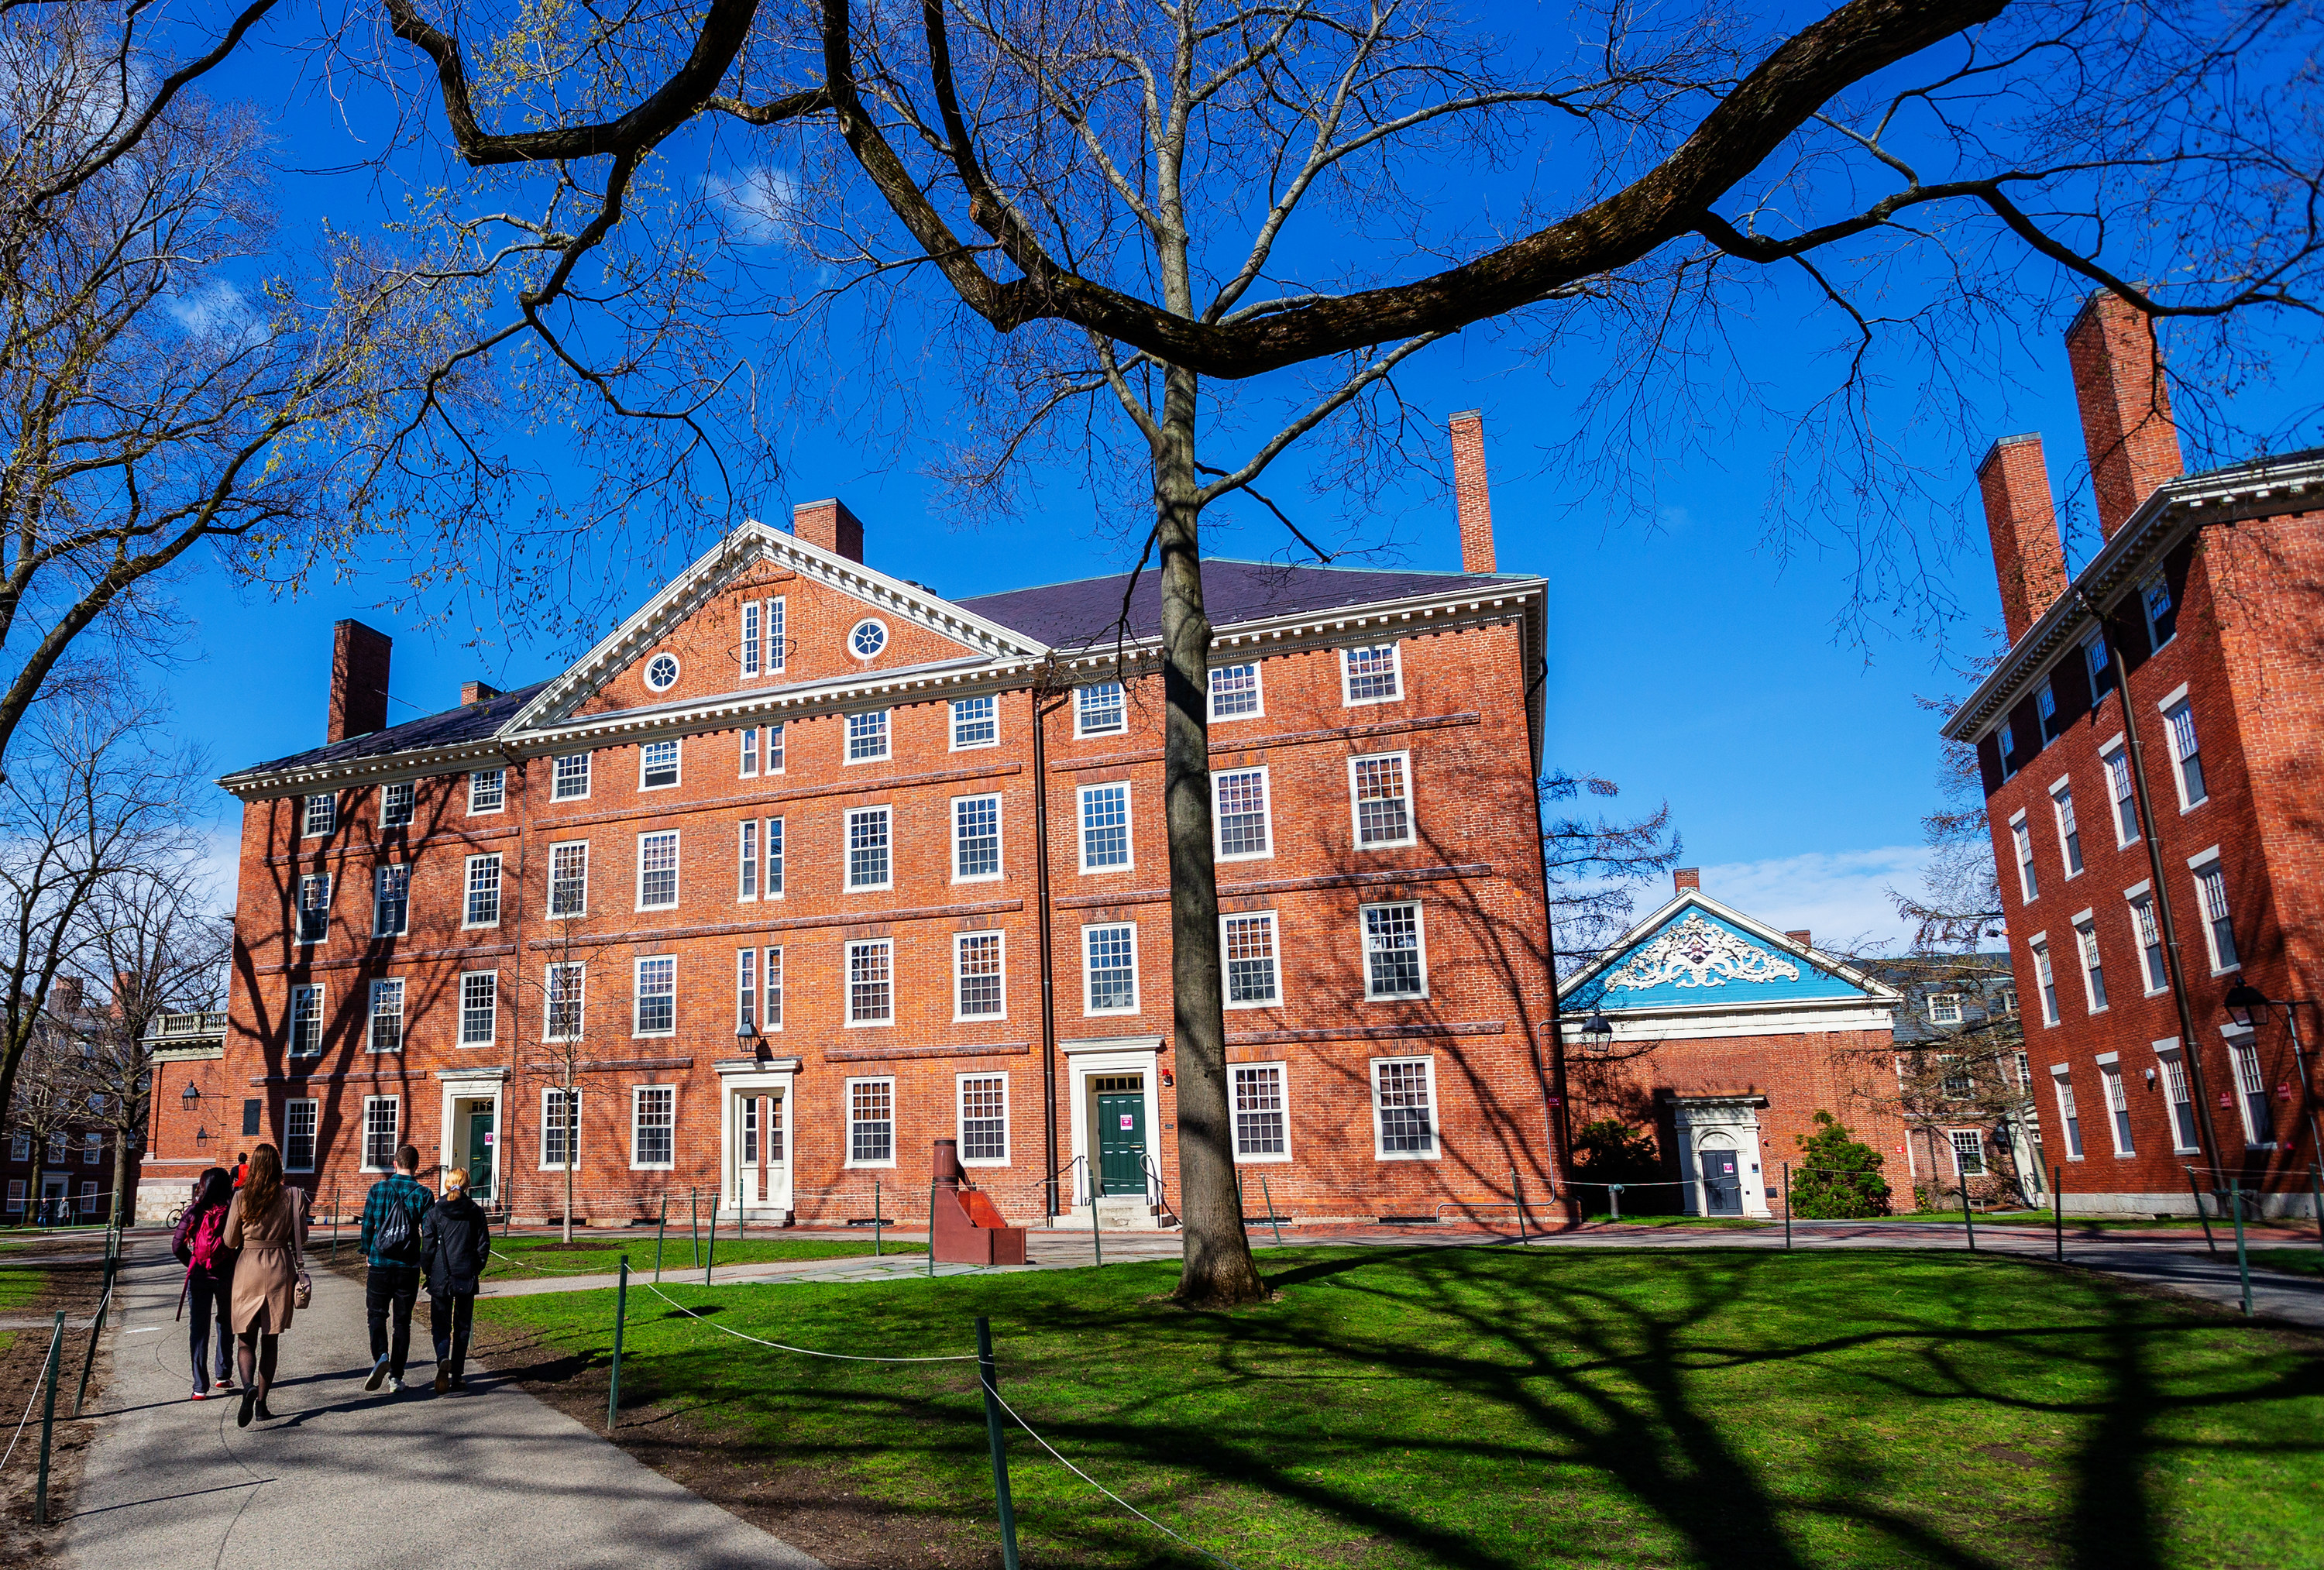 The Harvard campus